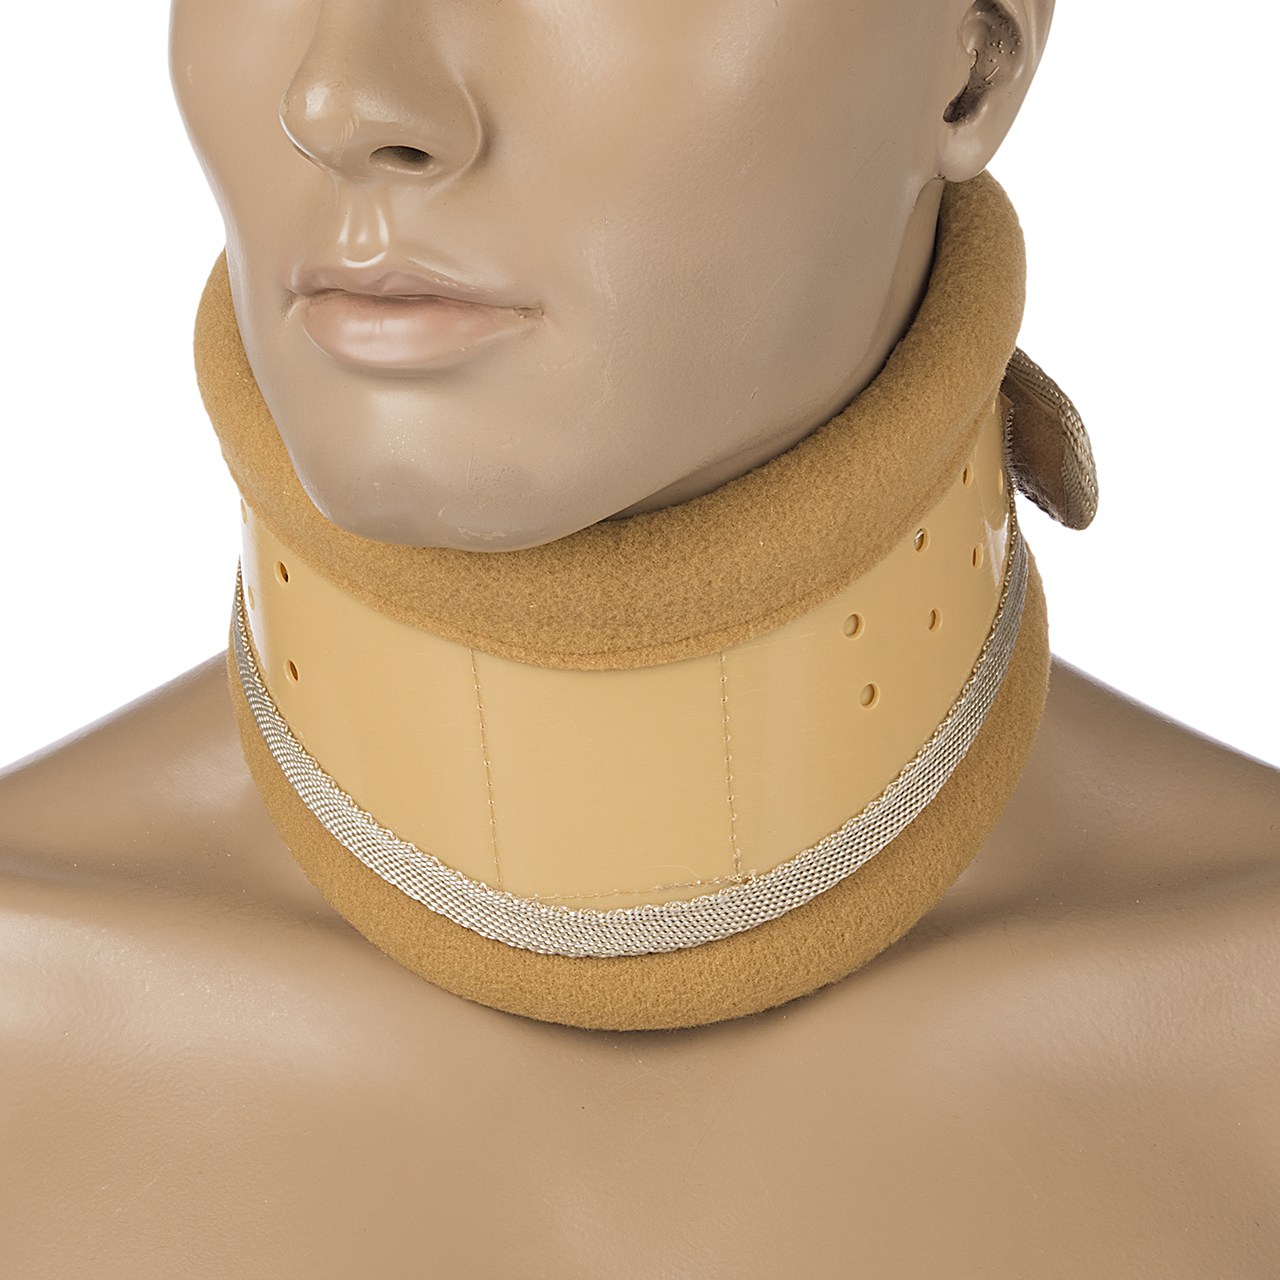 گردن بند طبی پاک سمن مدل Hard سایز متوسط